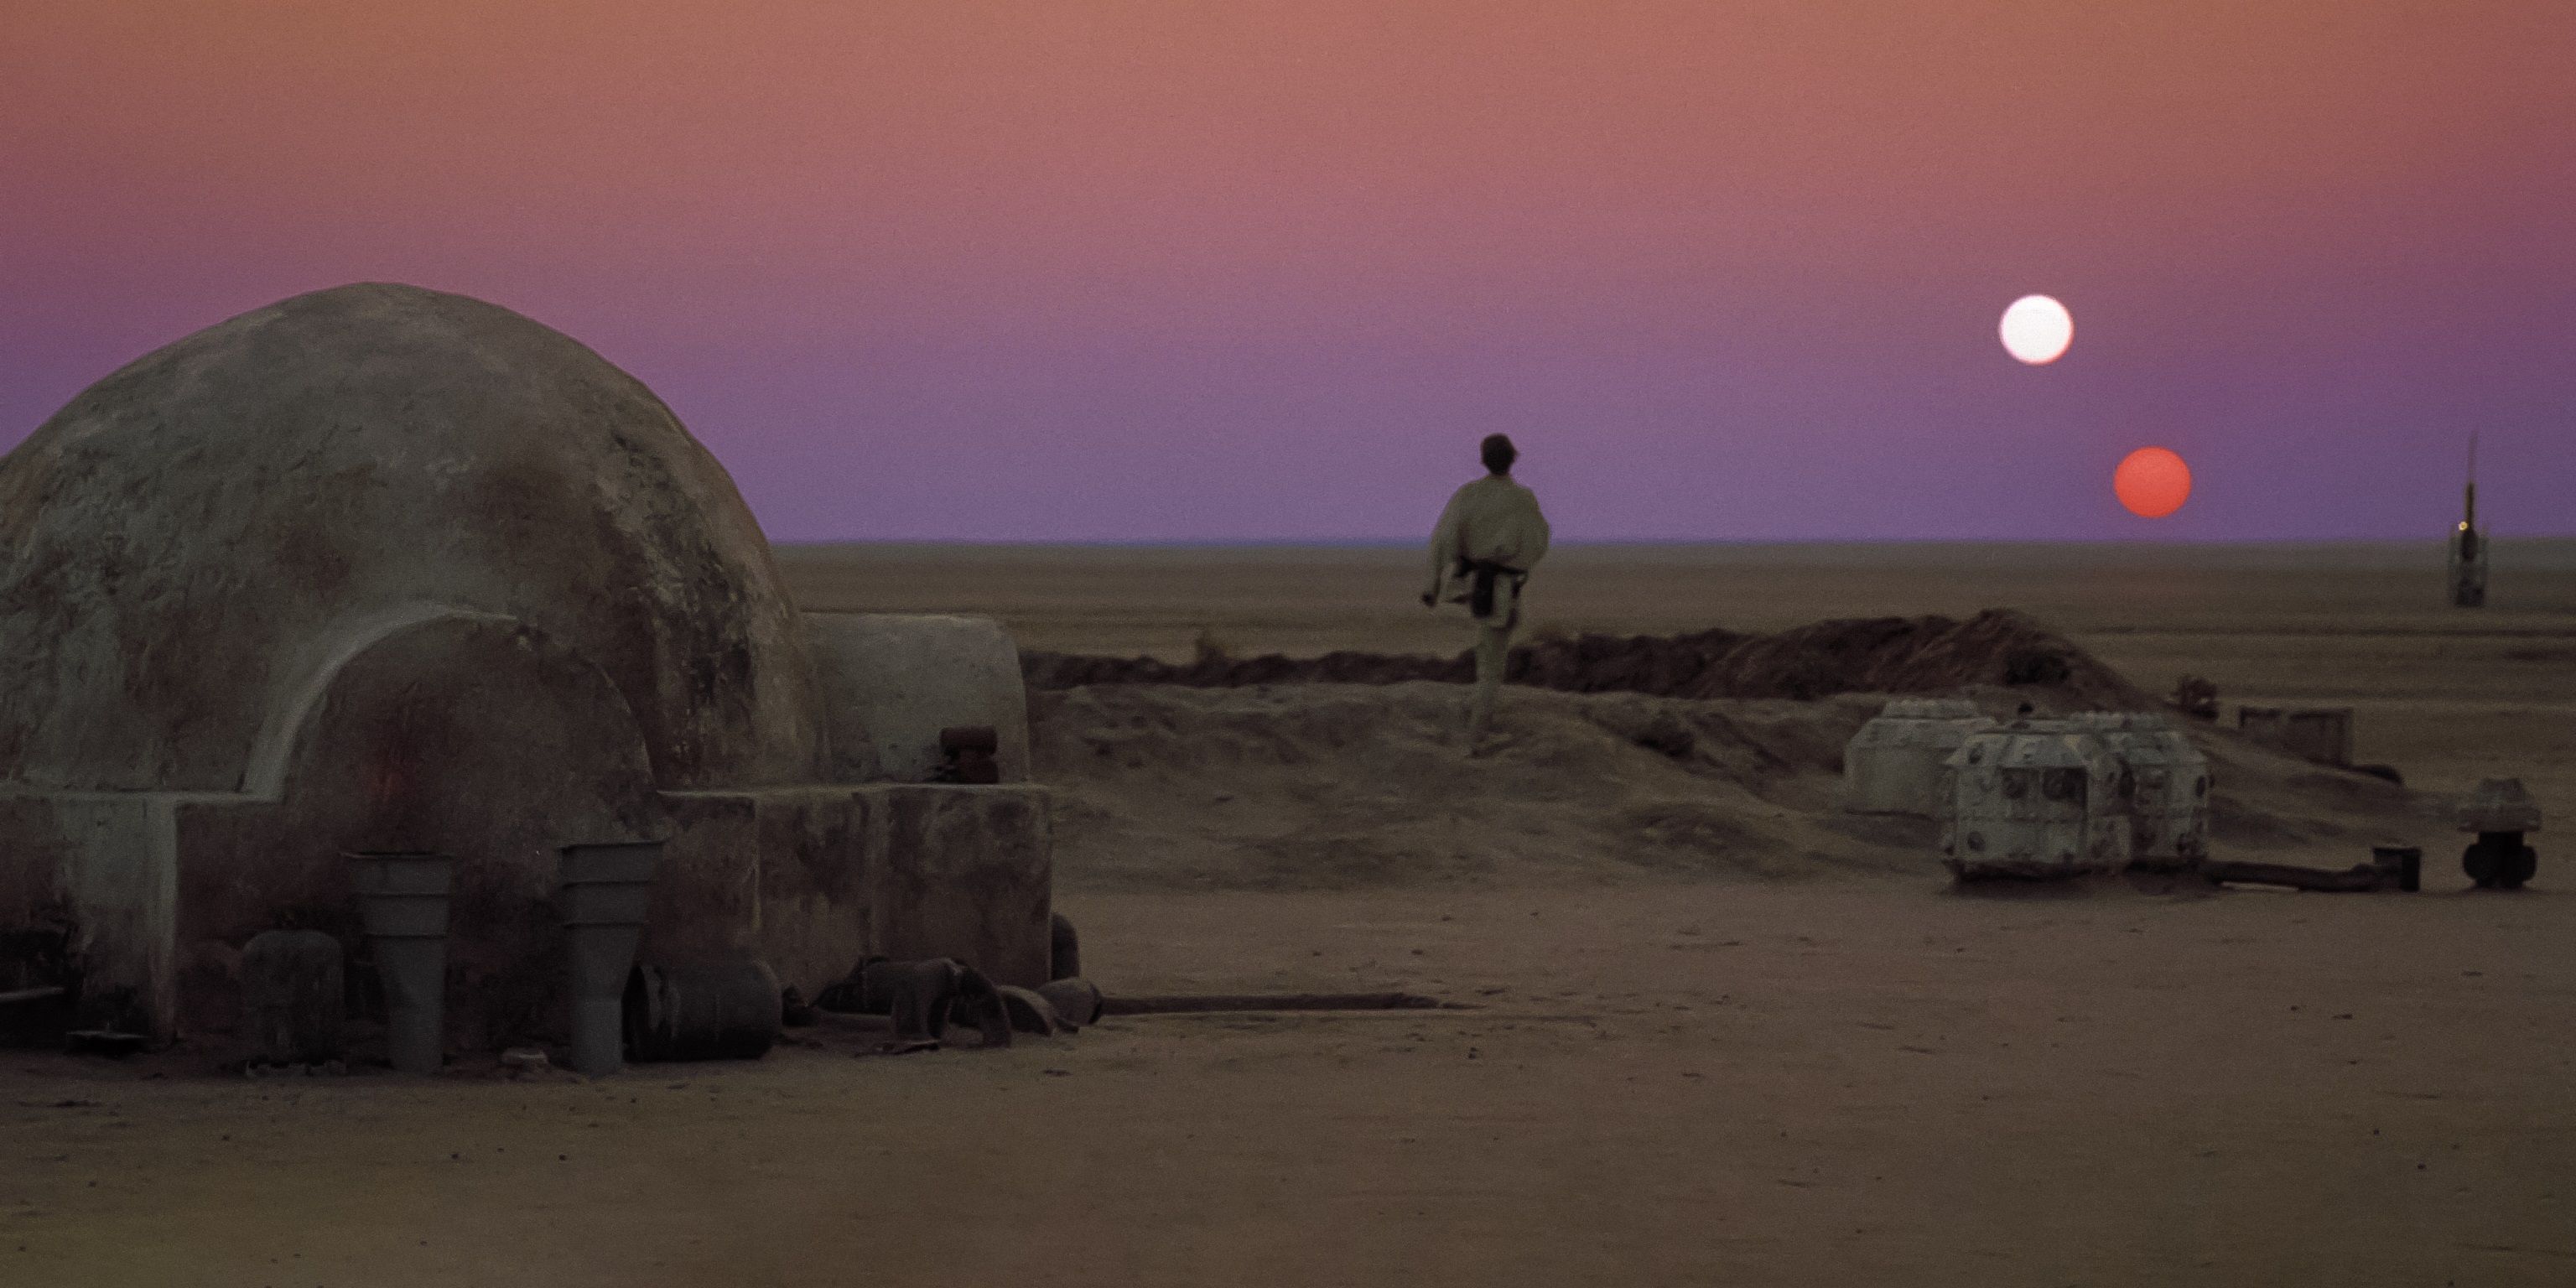 Luke Skywalker watches the binary sunset